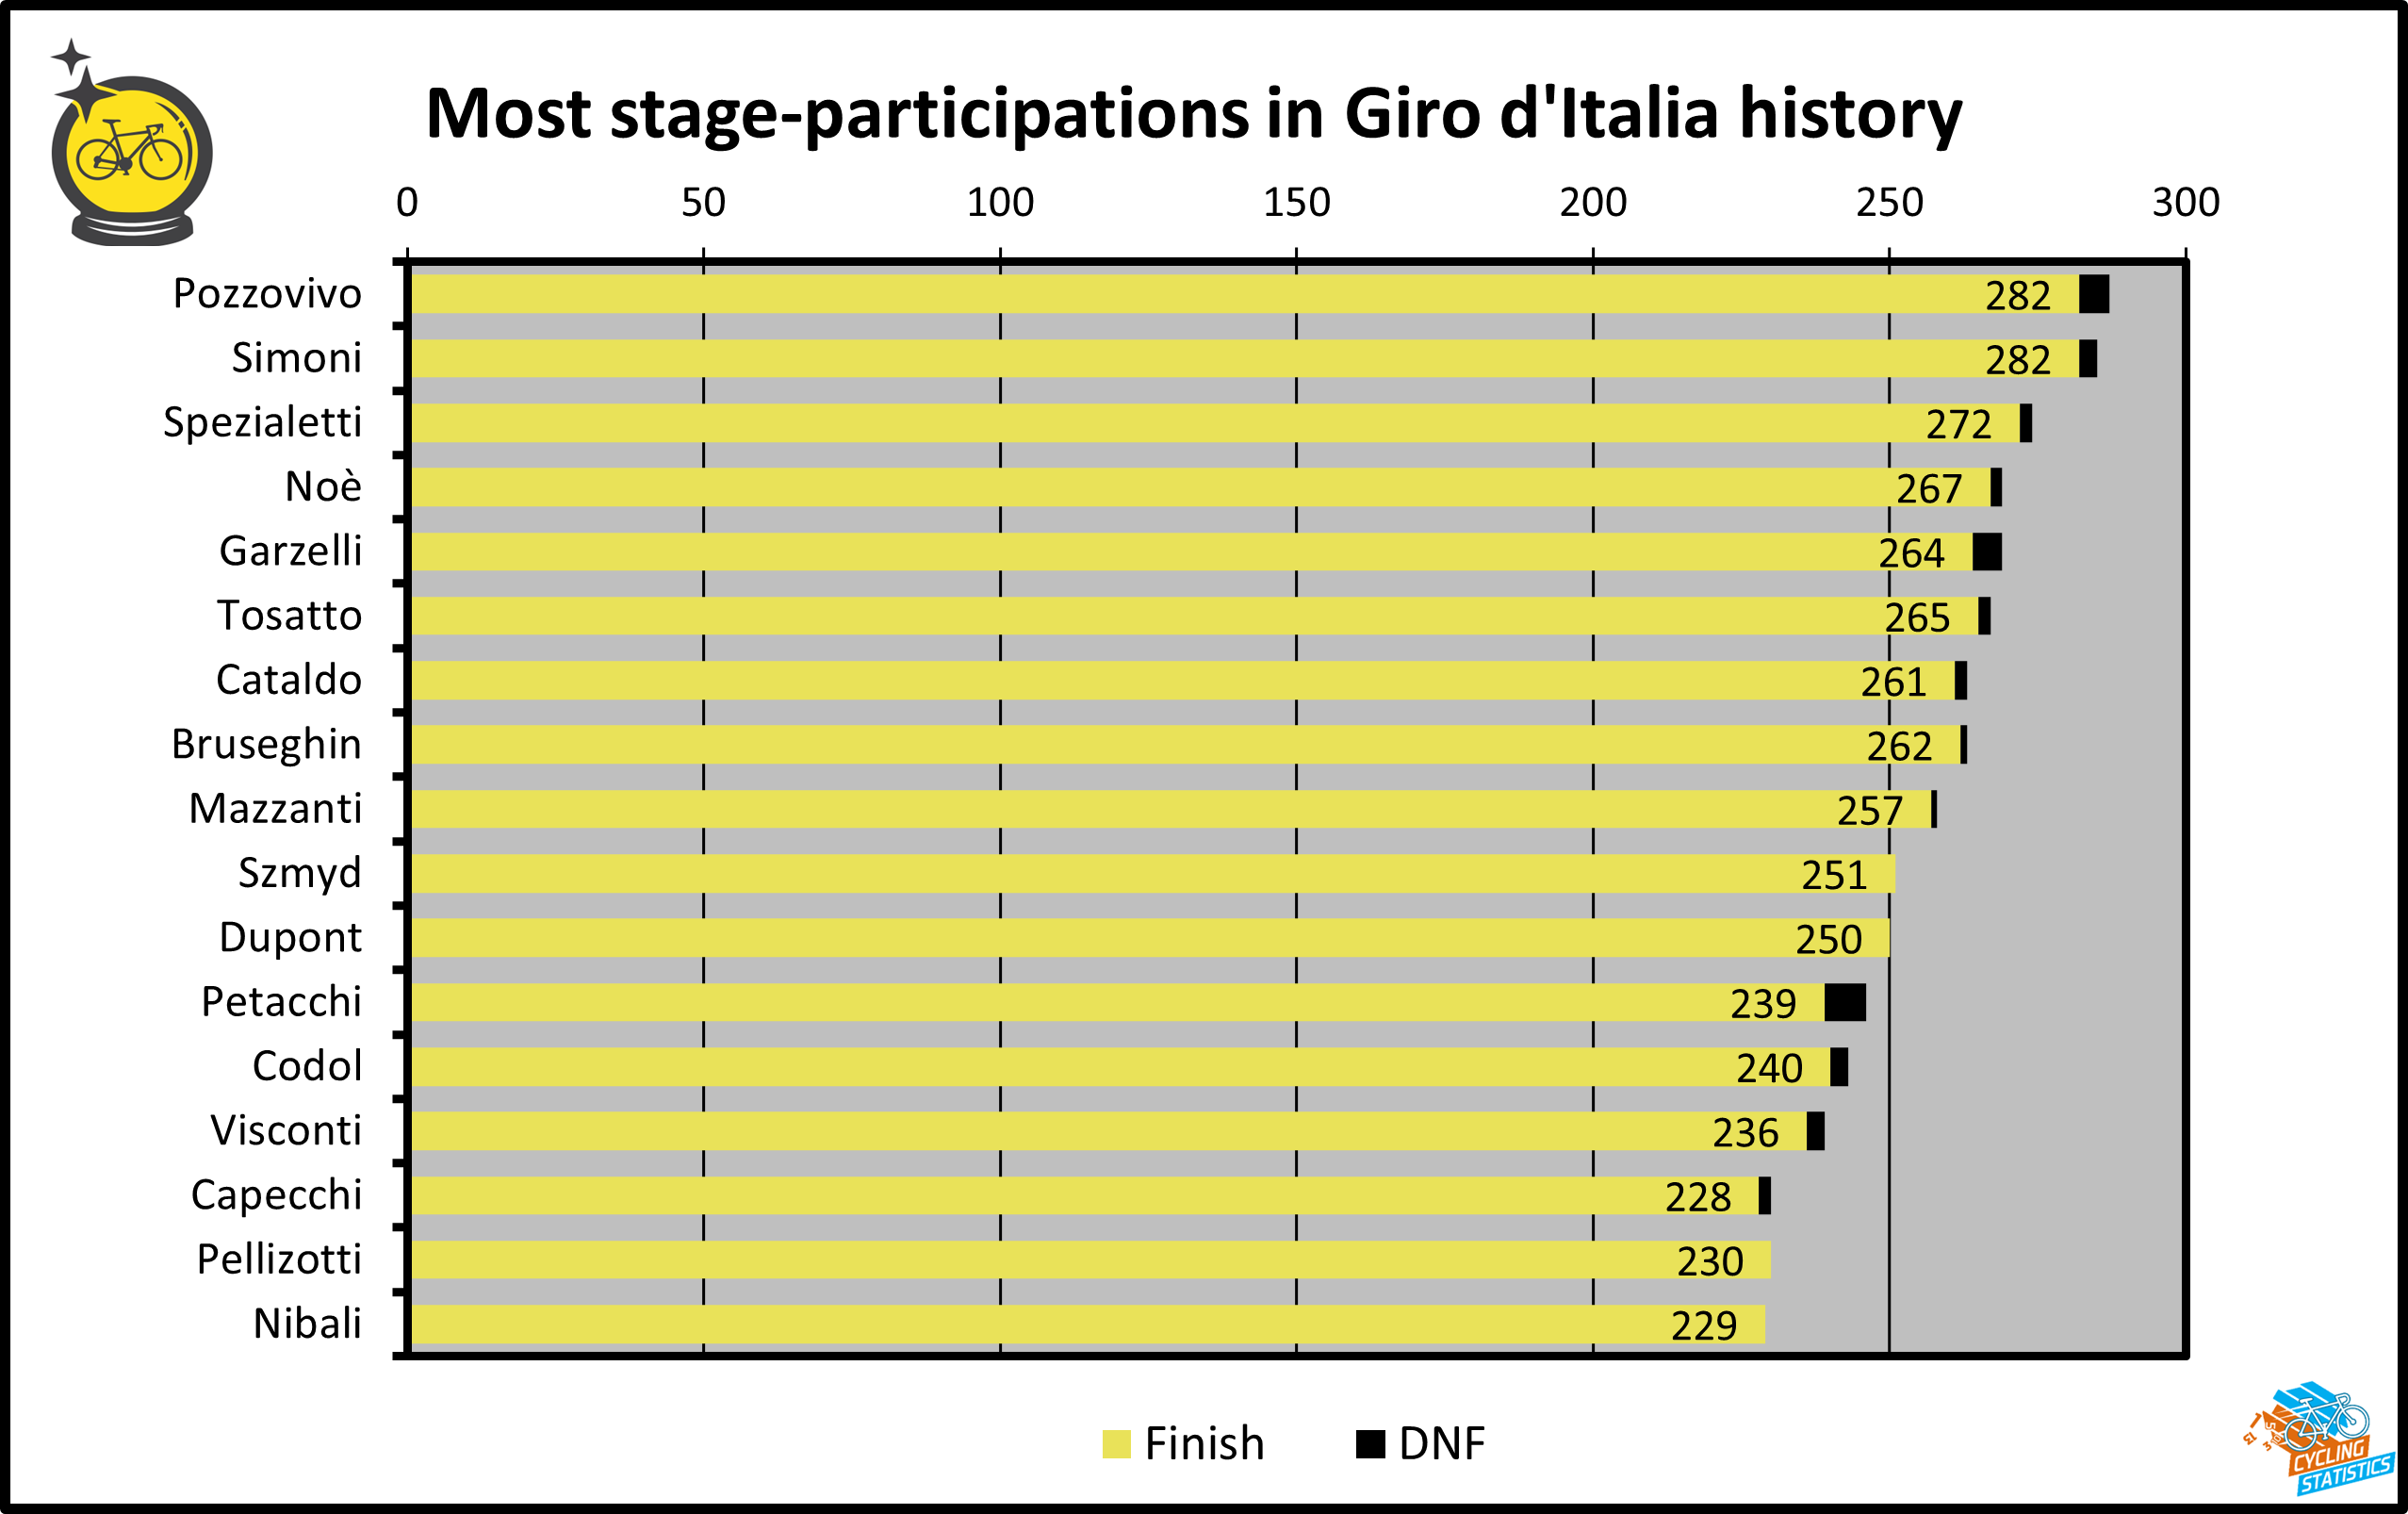 Meeste starts in Giro etappes